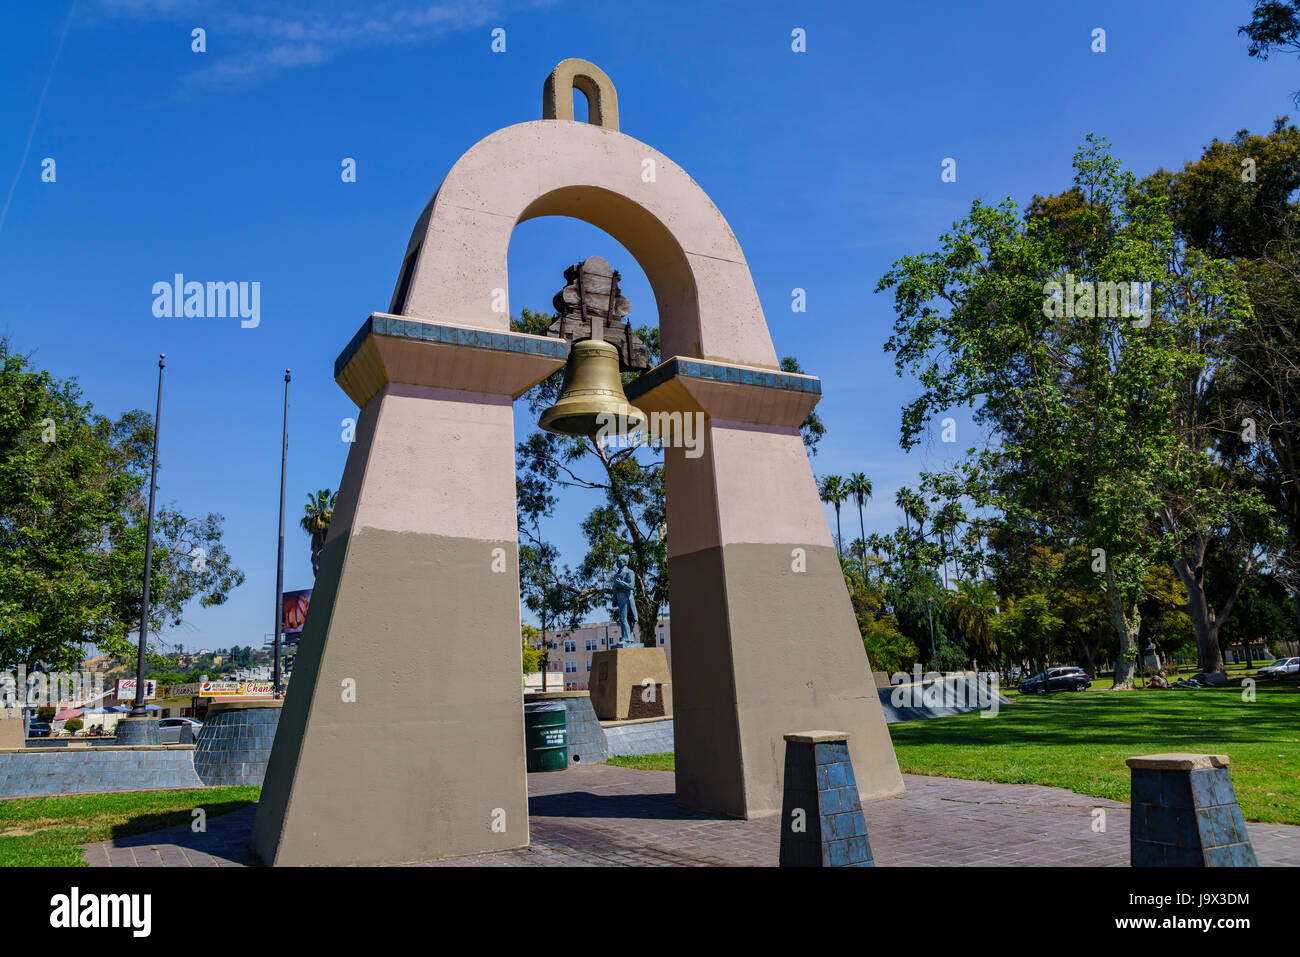 Bell tower at El Parque de Mexico Park, Los Angeles, California Stock Photo